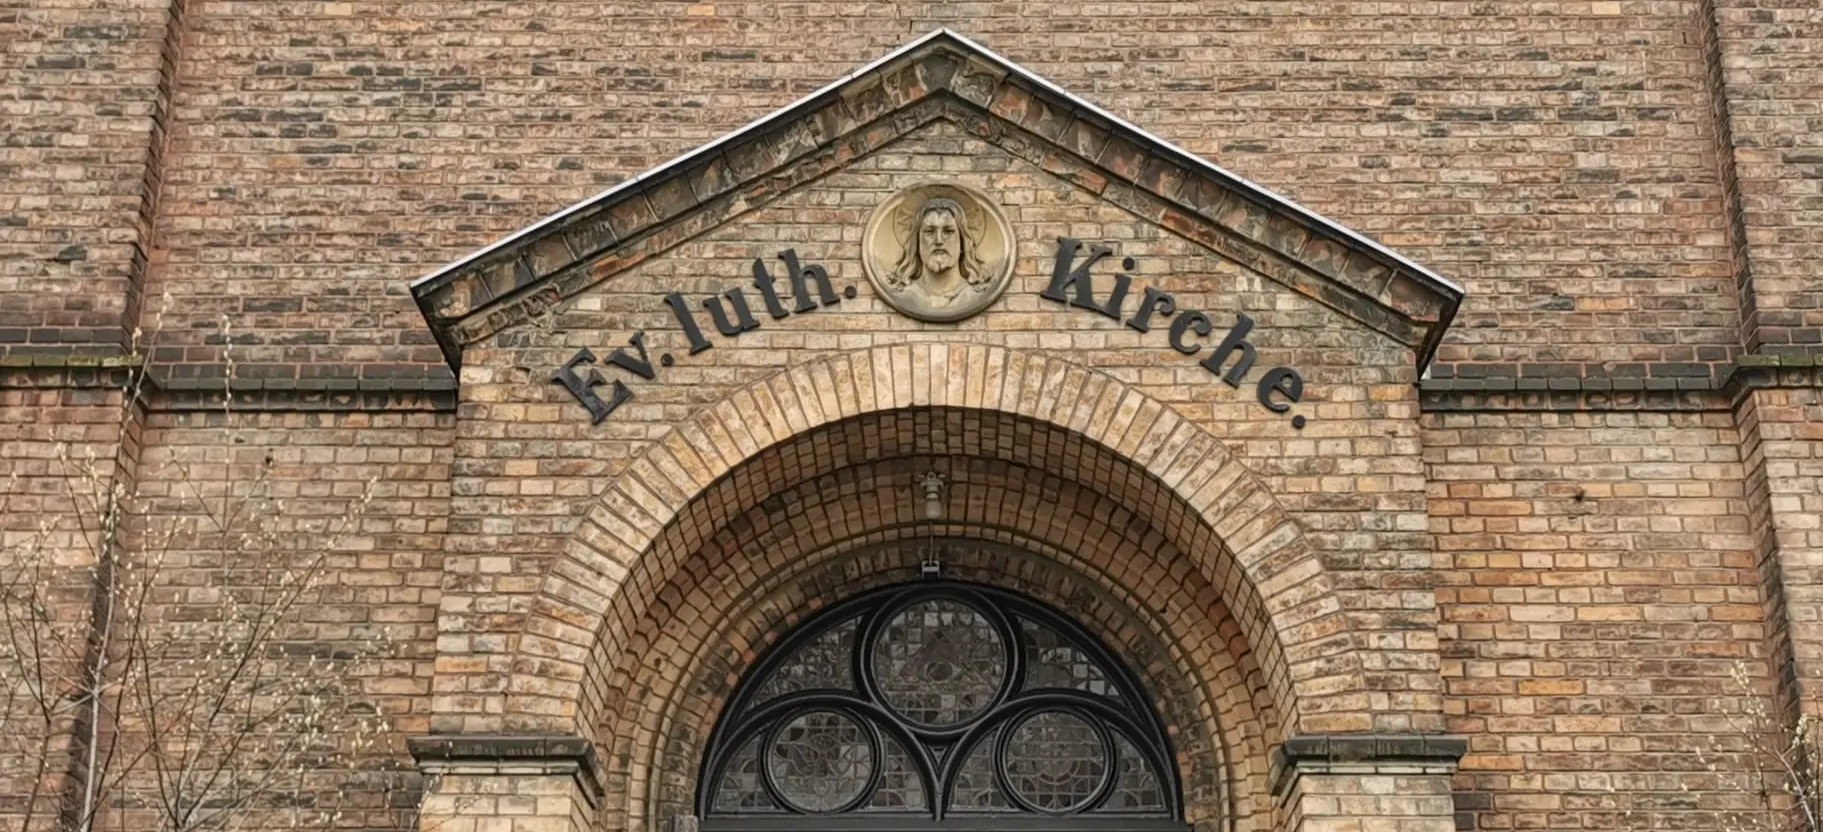 Evangelisch-Lutherische Gemeinde Berlin-Mitte